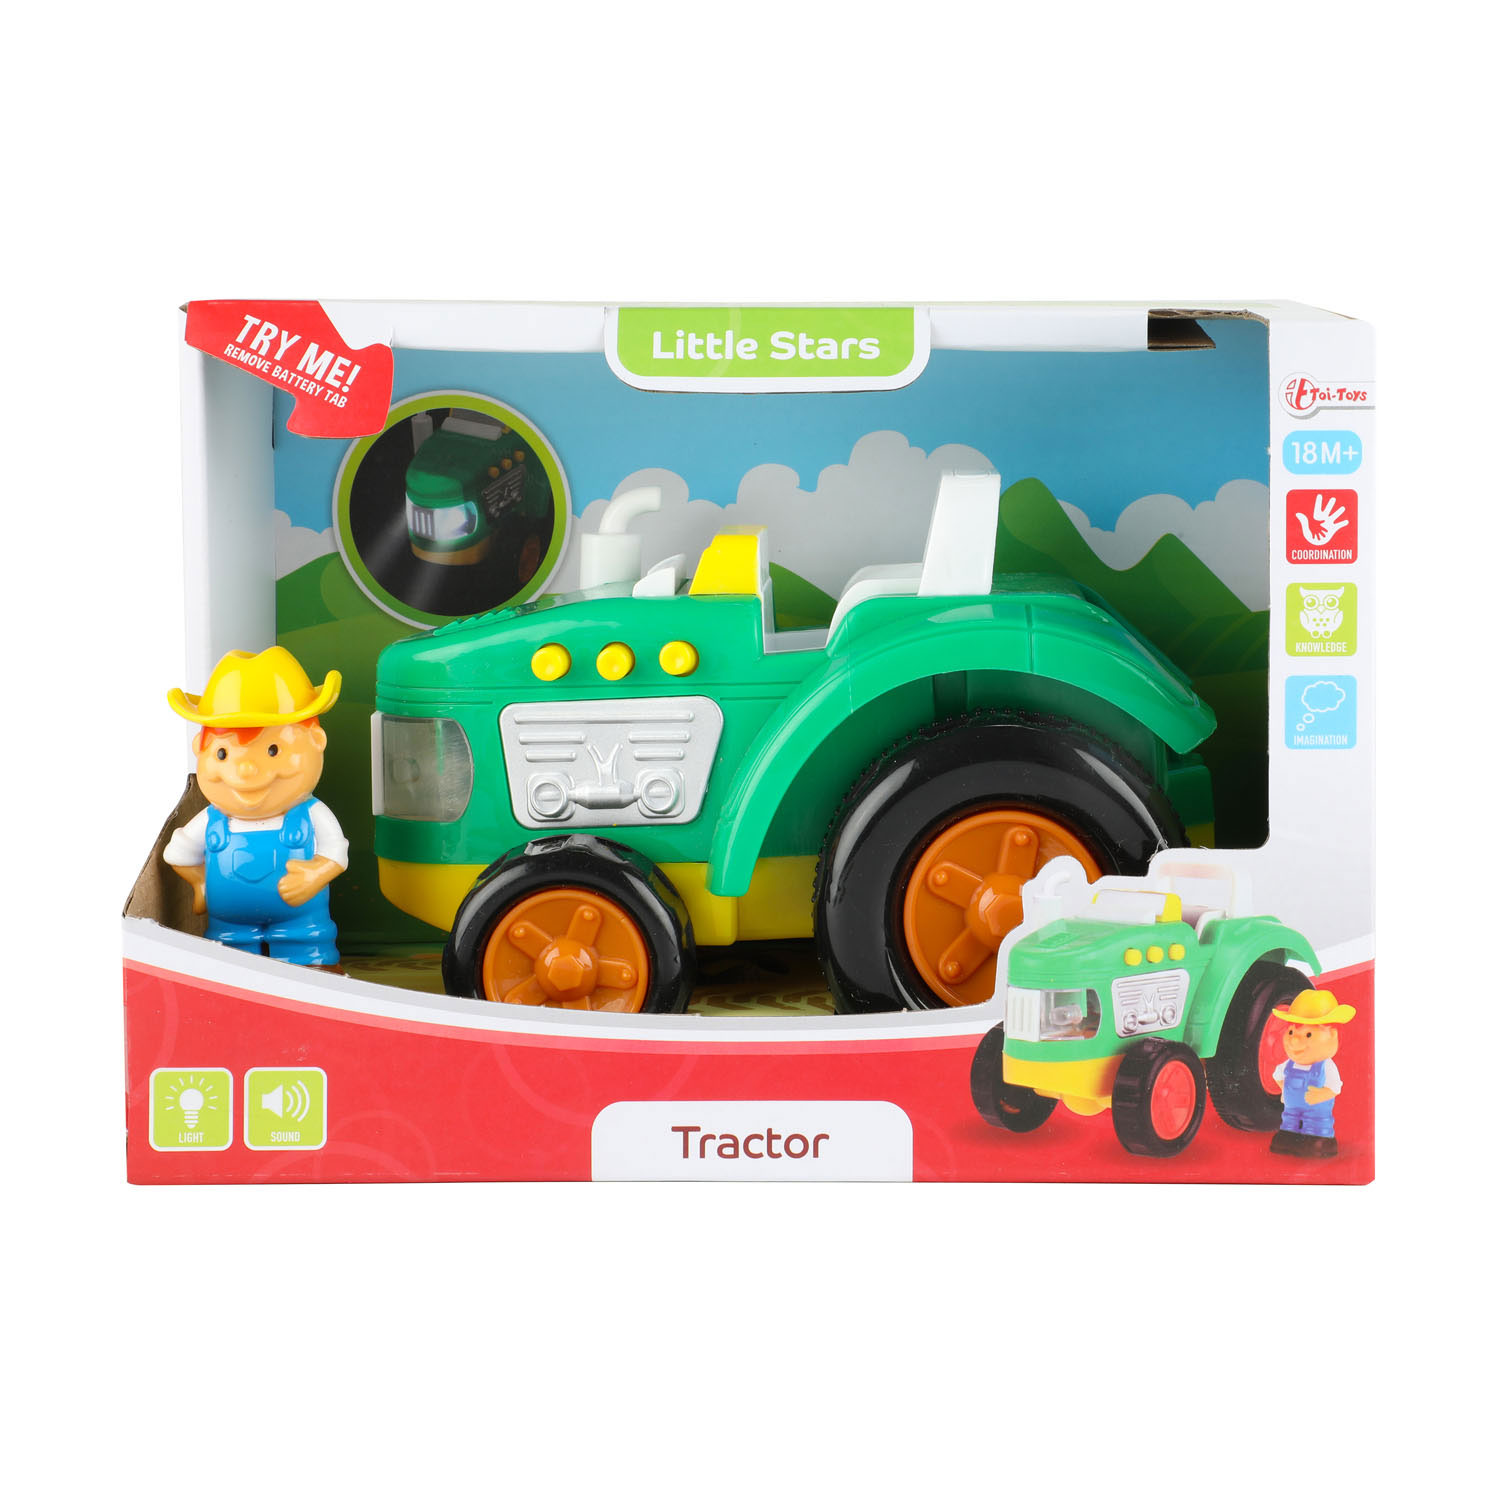 Little Stars Tractor met Licht & Geluid